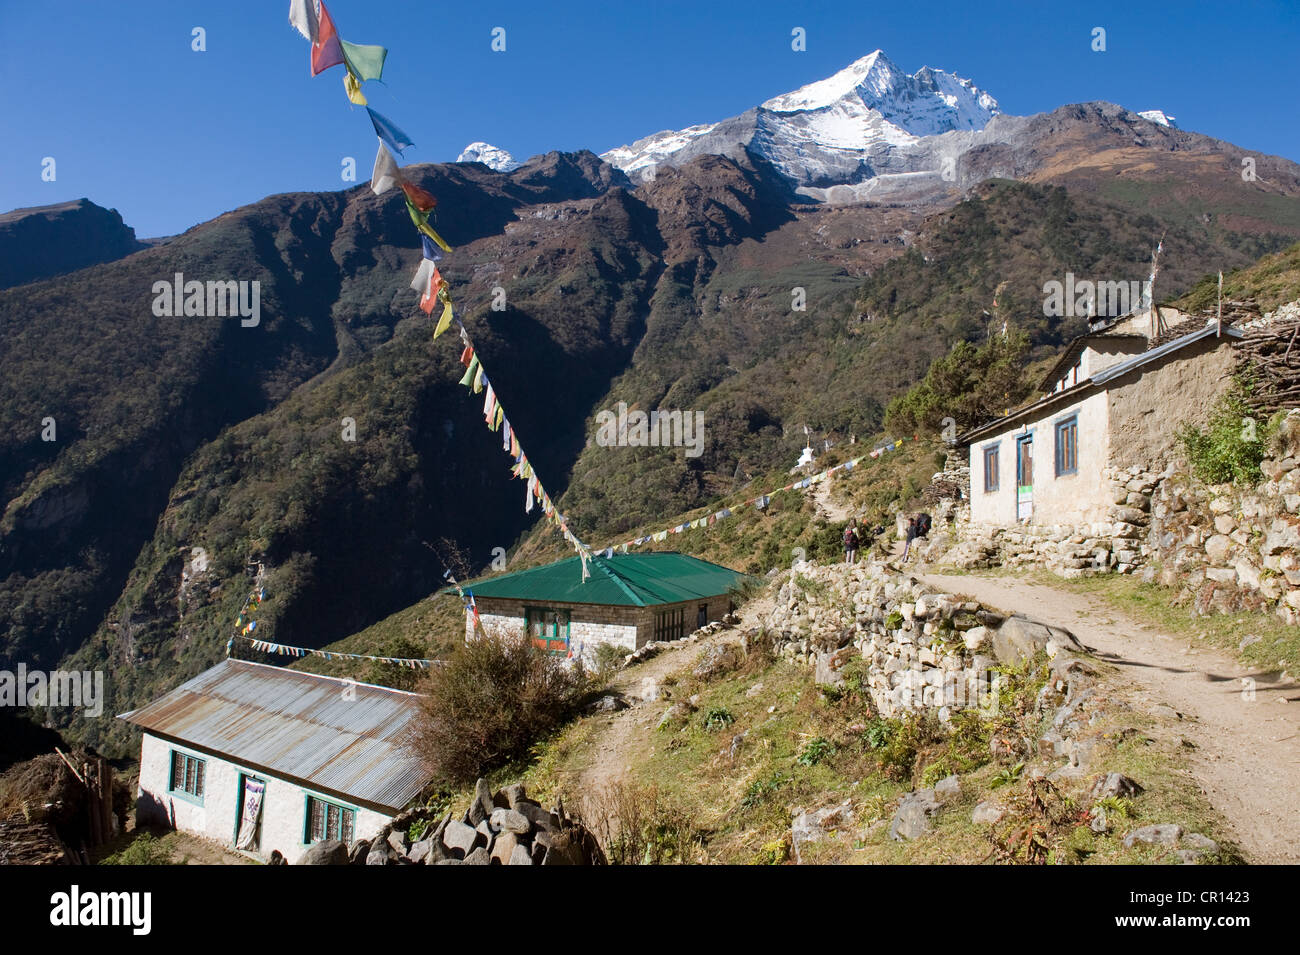 Le Népal, parc national de Sagarmatha, District de Solu Khumbu Everest, salon, chemin entre Namche Bazar et Thamo (3493m) Banque D'Images